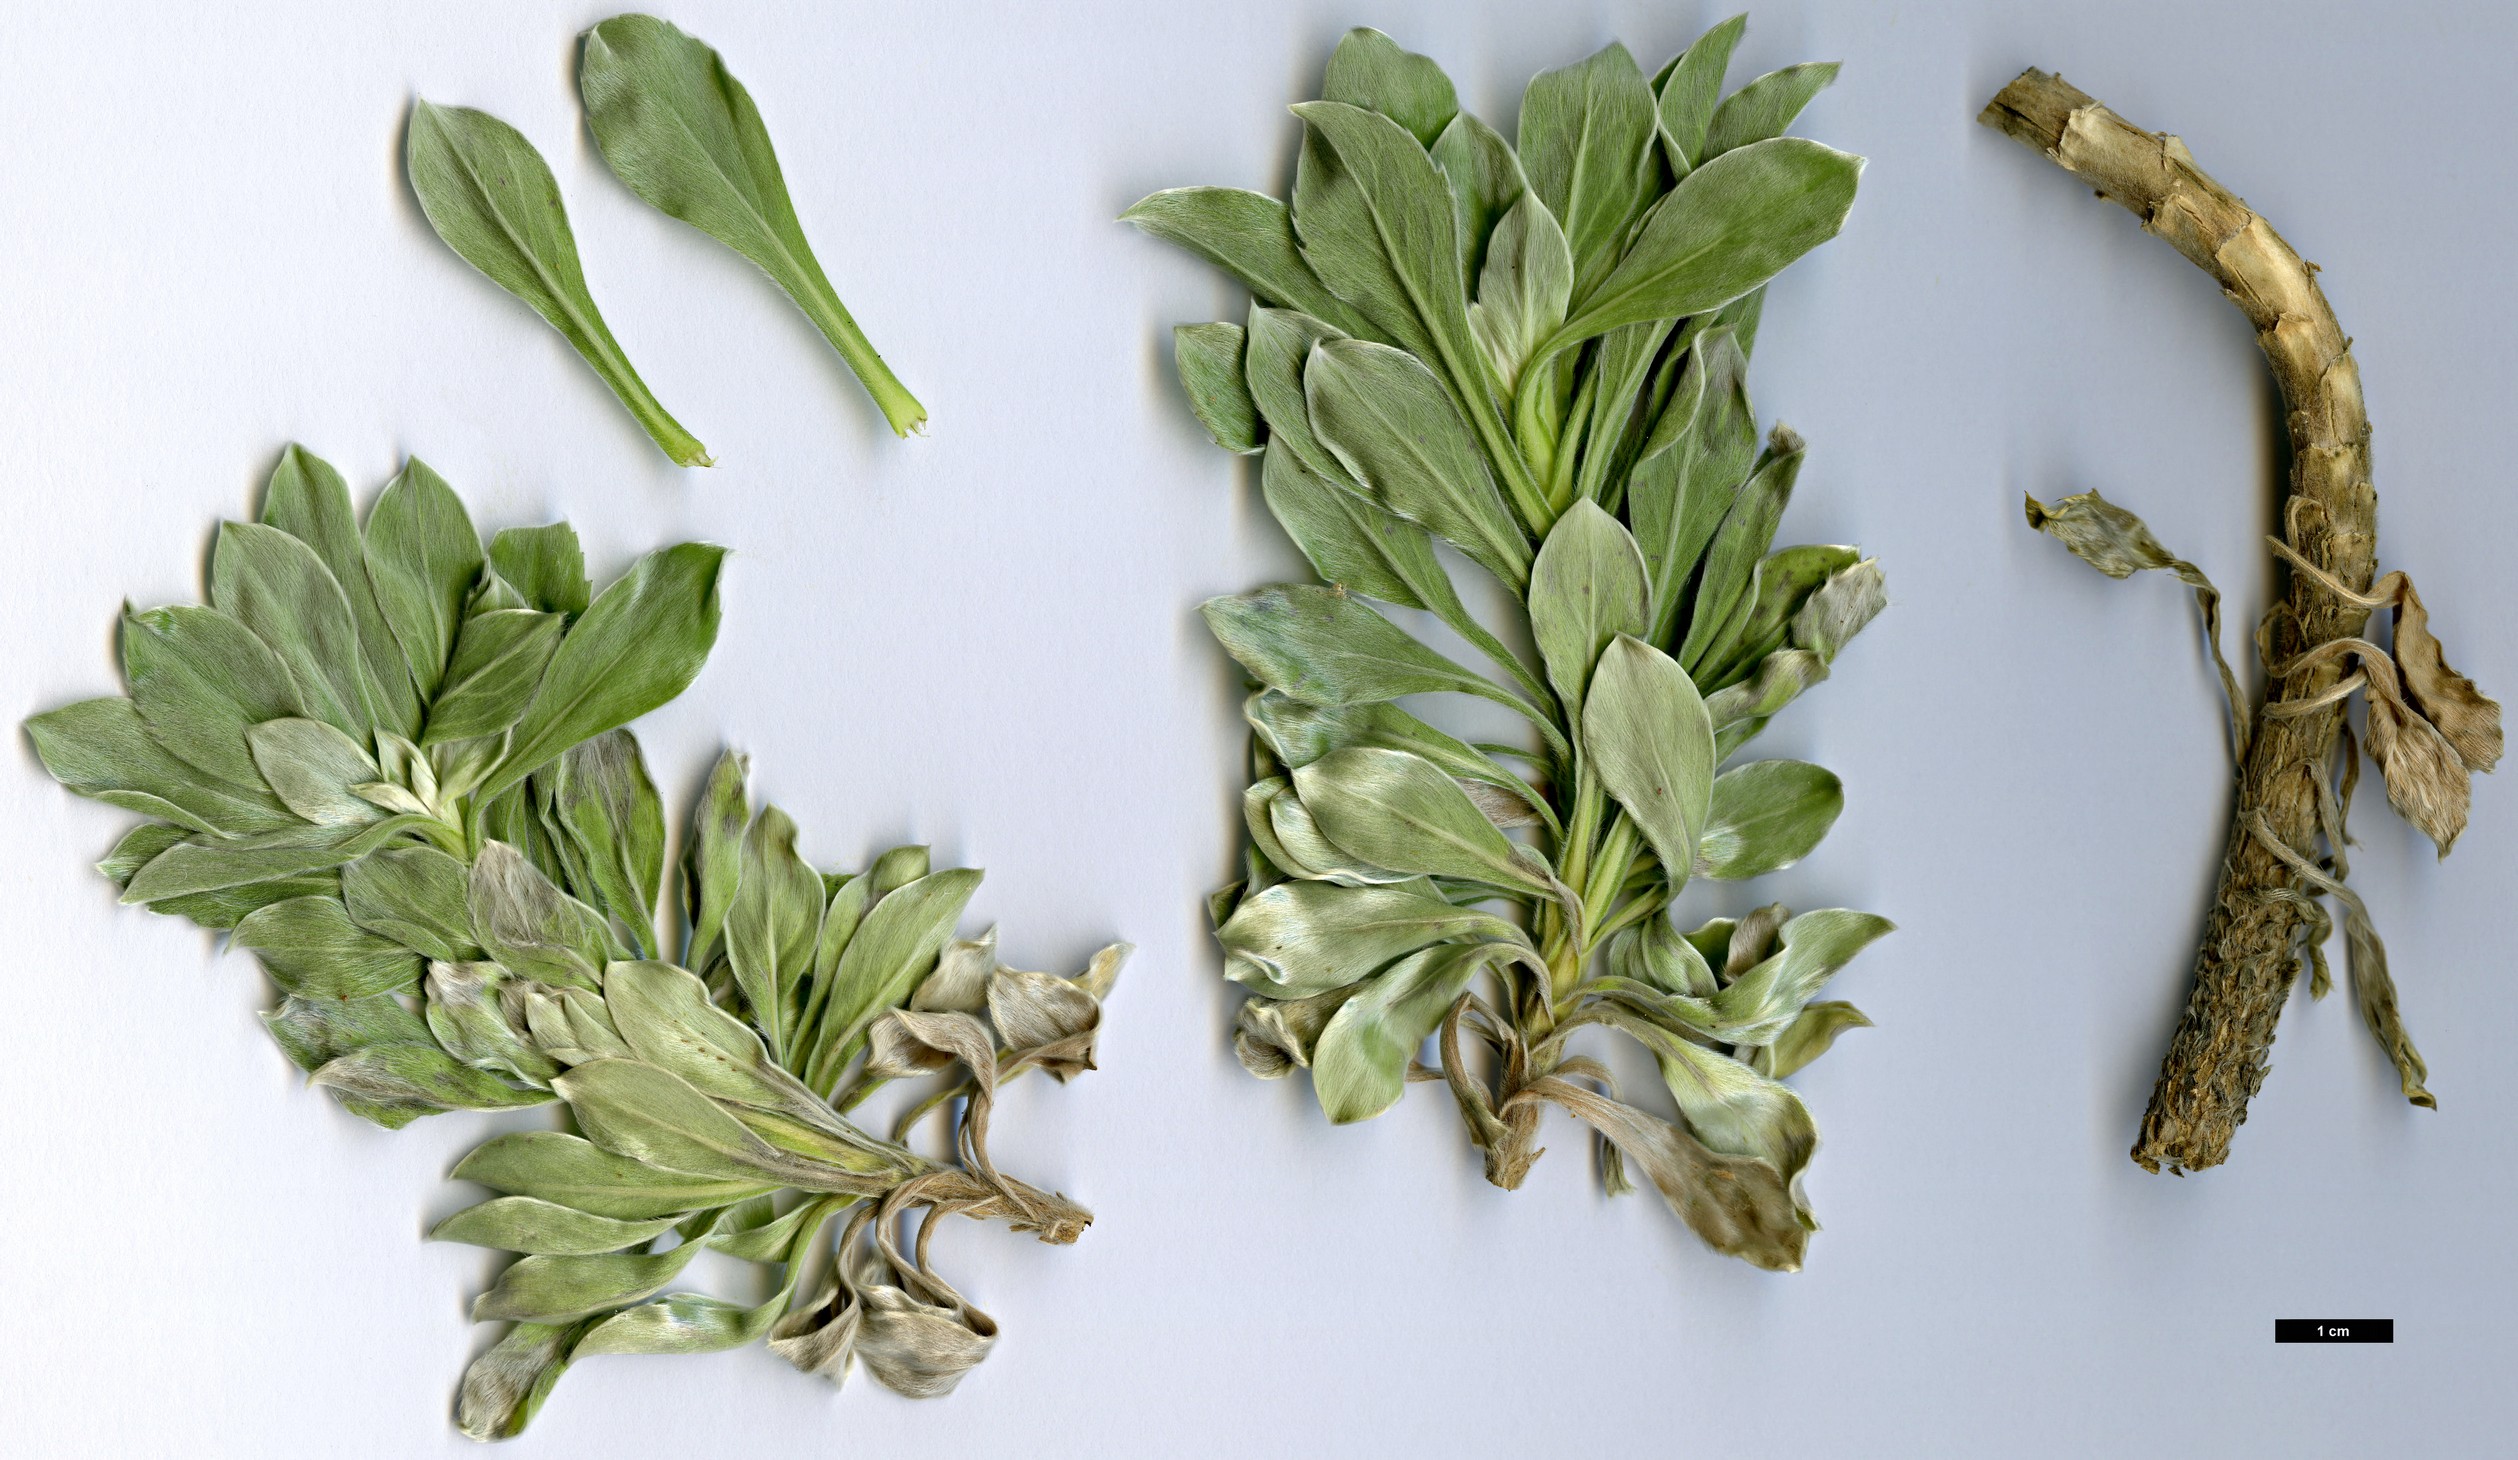 High resolution image: Family: Asteraceae - Genus: Asteriscus - Taxon: intermedius